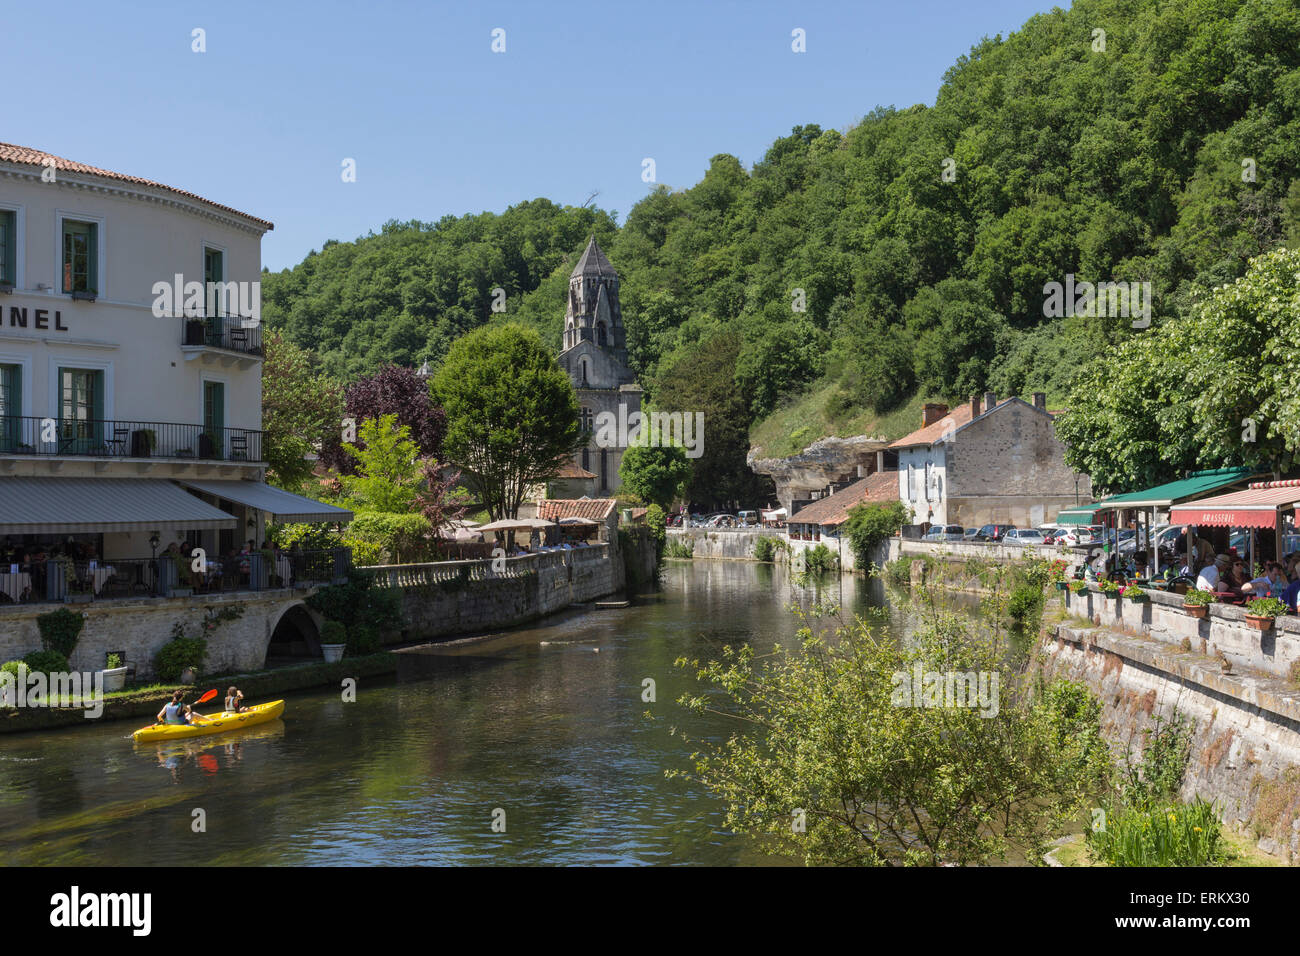 Kanu auf dem Fluss Dronne, Brantome, Dordogne, Aquitaine, Frankreich, Europa Stockfoto